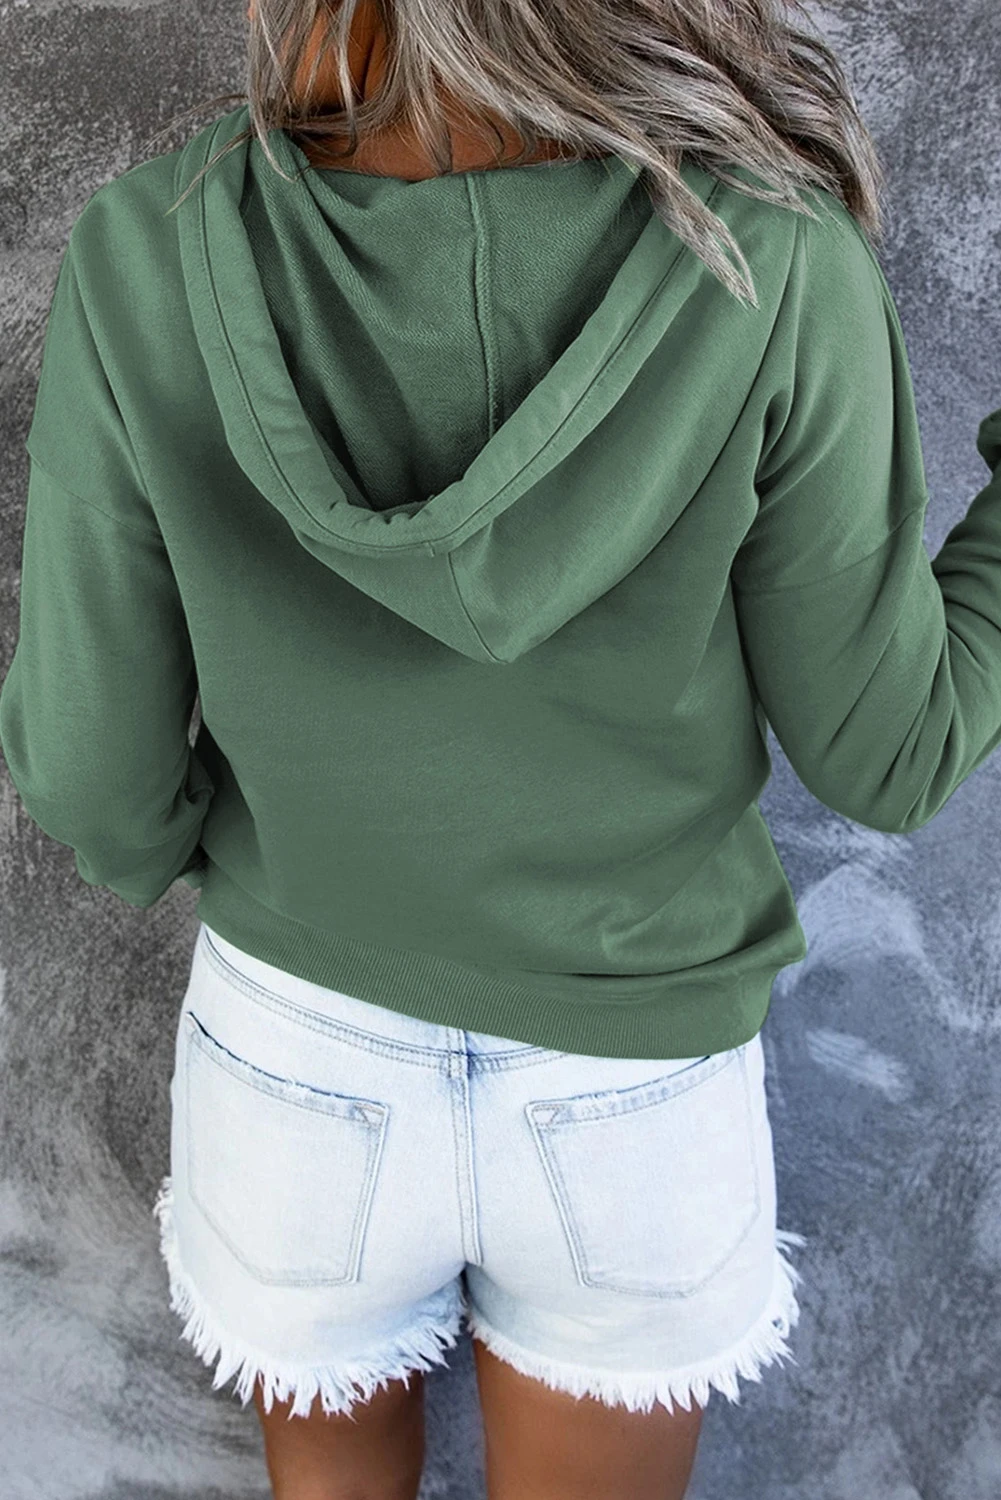 绿色时尚休闲口袋按扣领长袖套头连帽衫 LC2537874